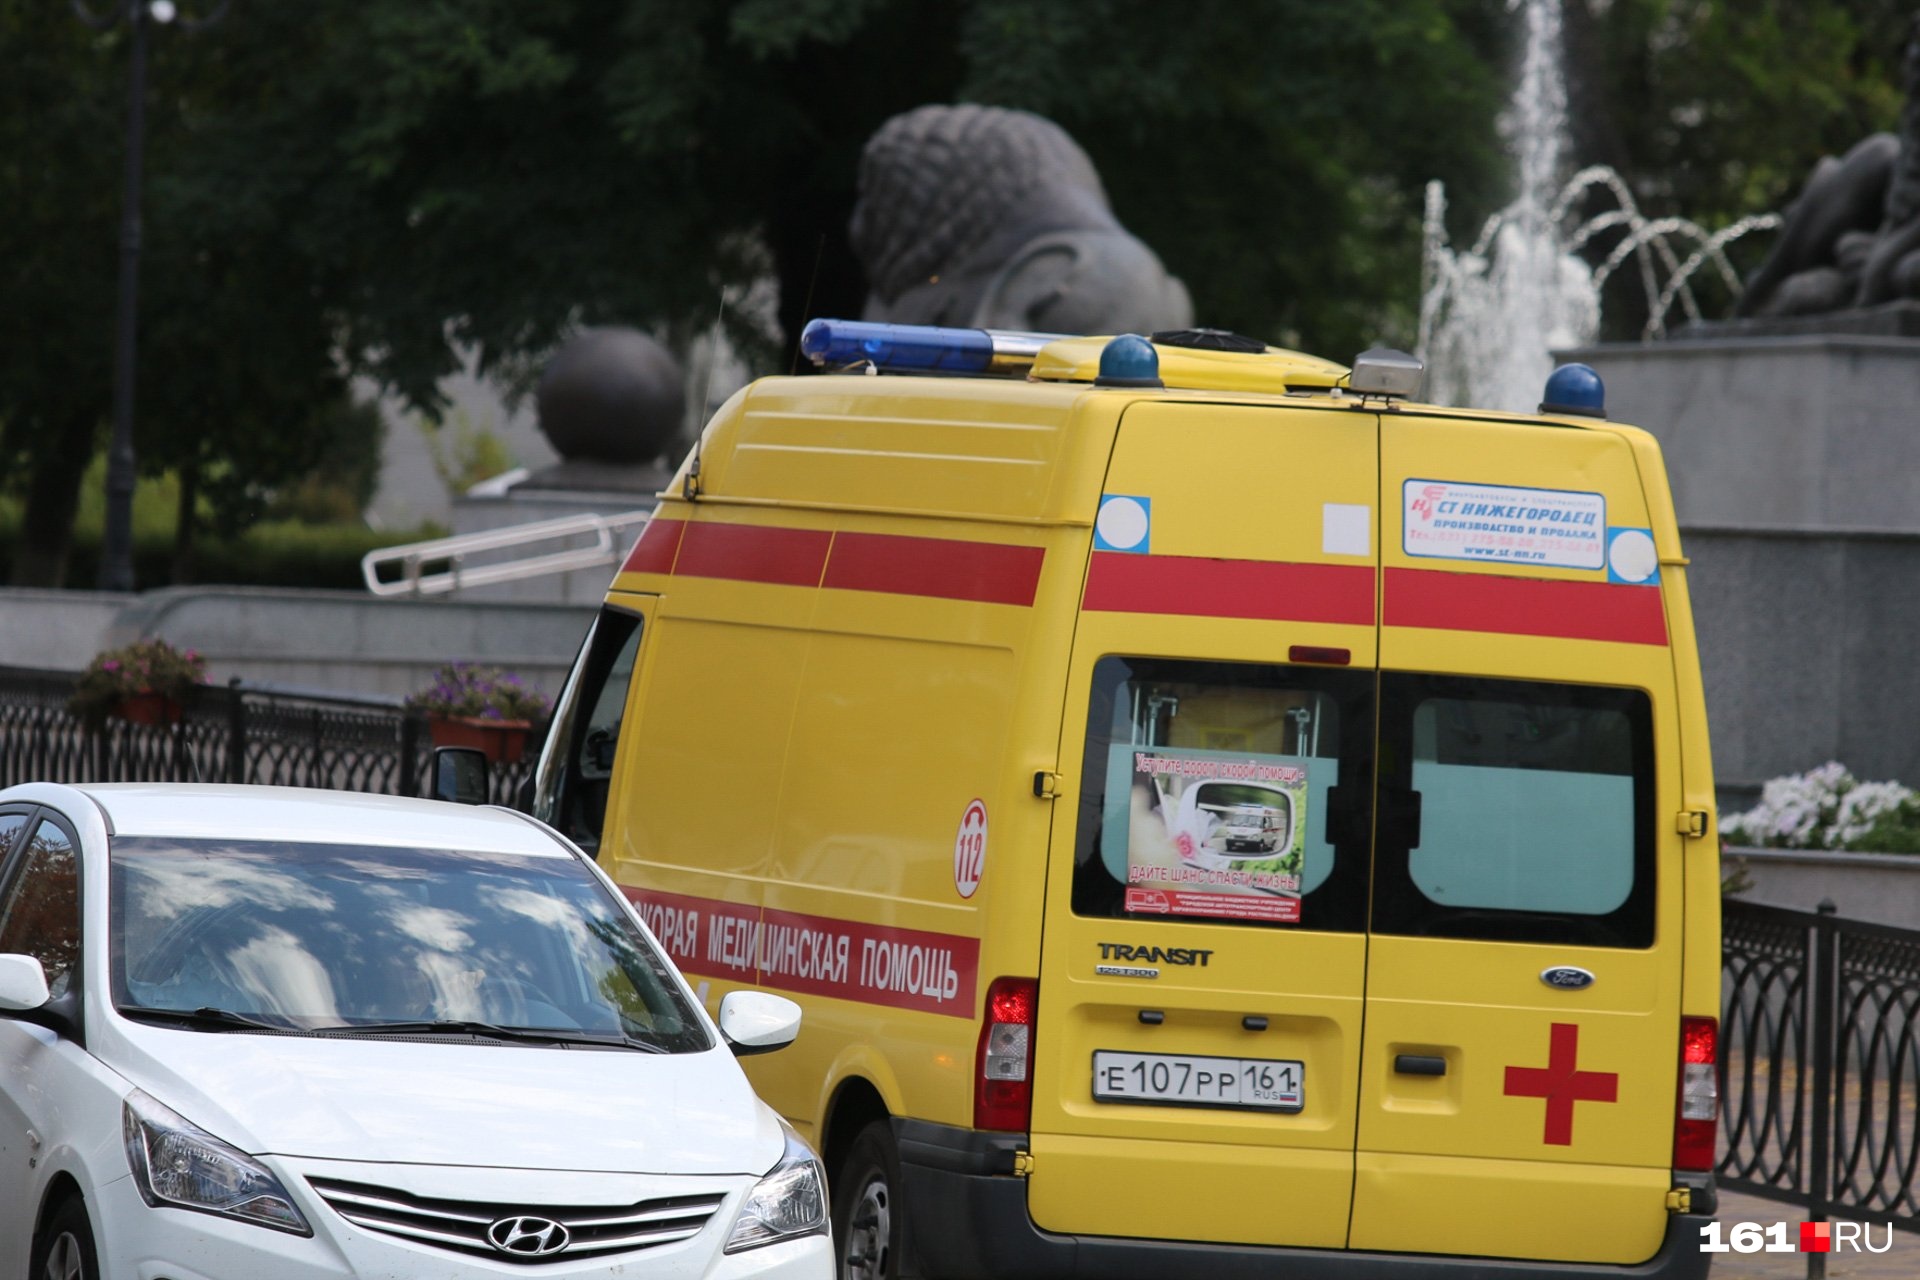 Двое на одного: в Таганроге водители избили мужчину после замечания